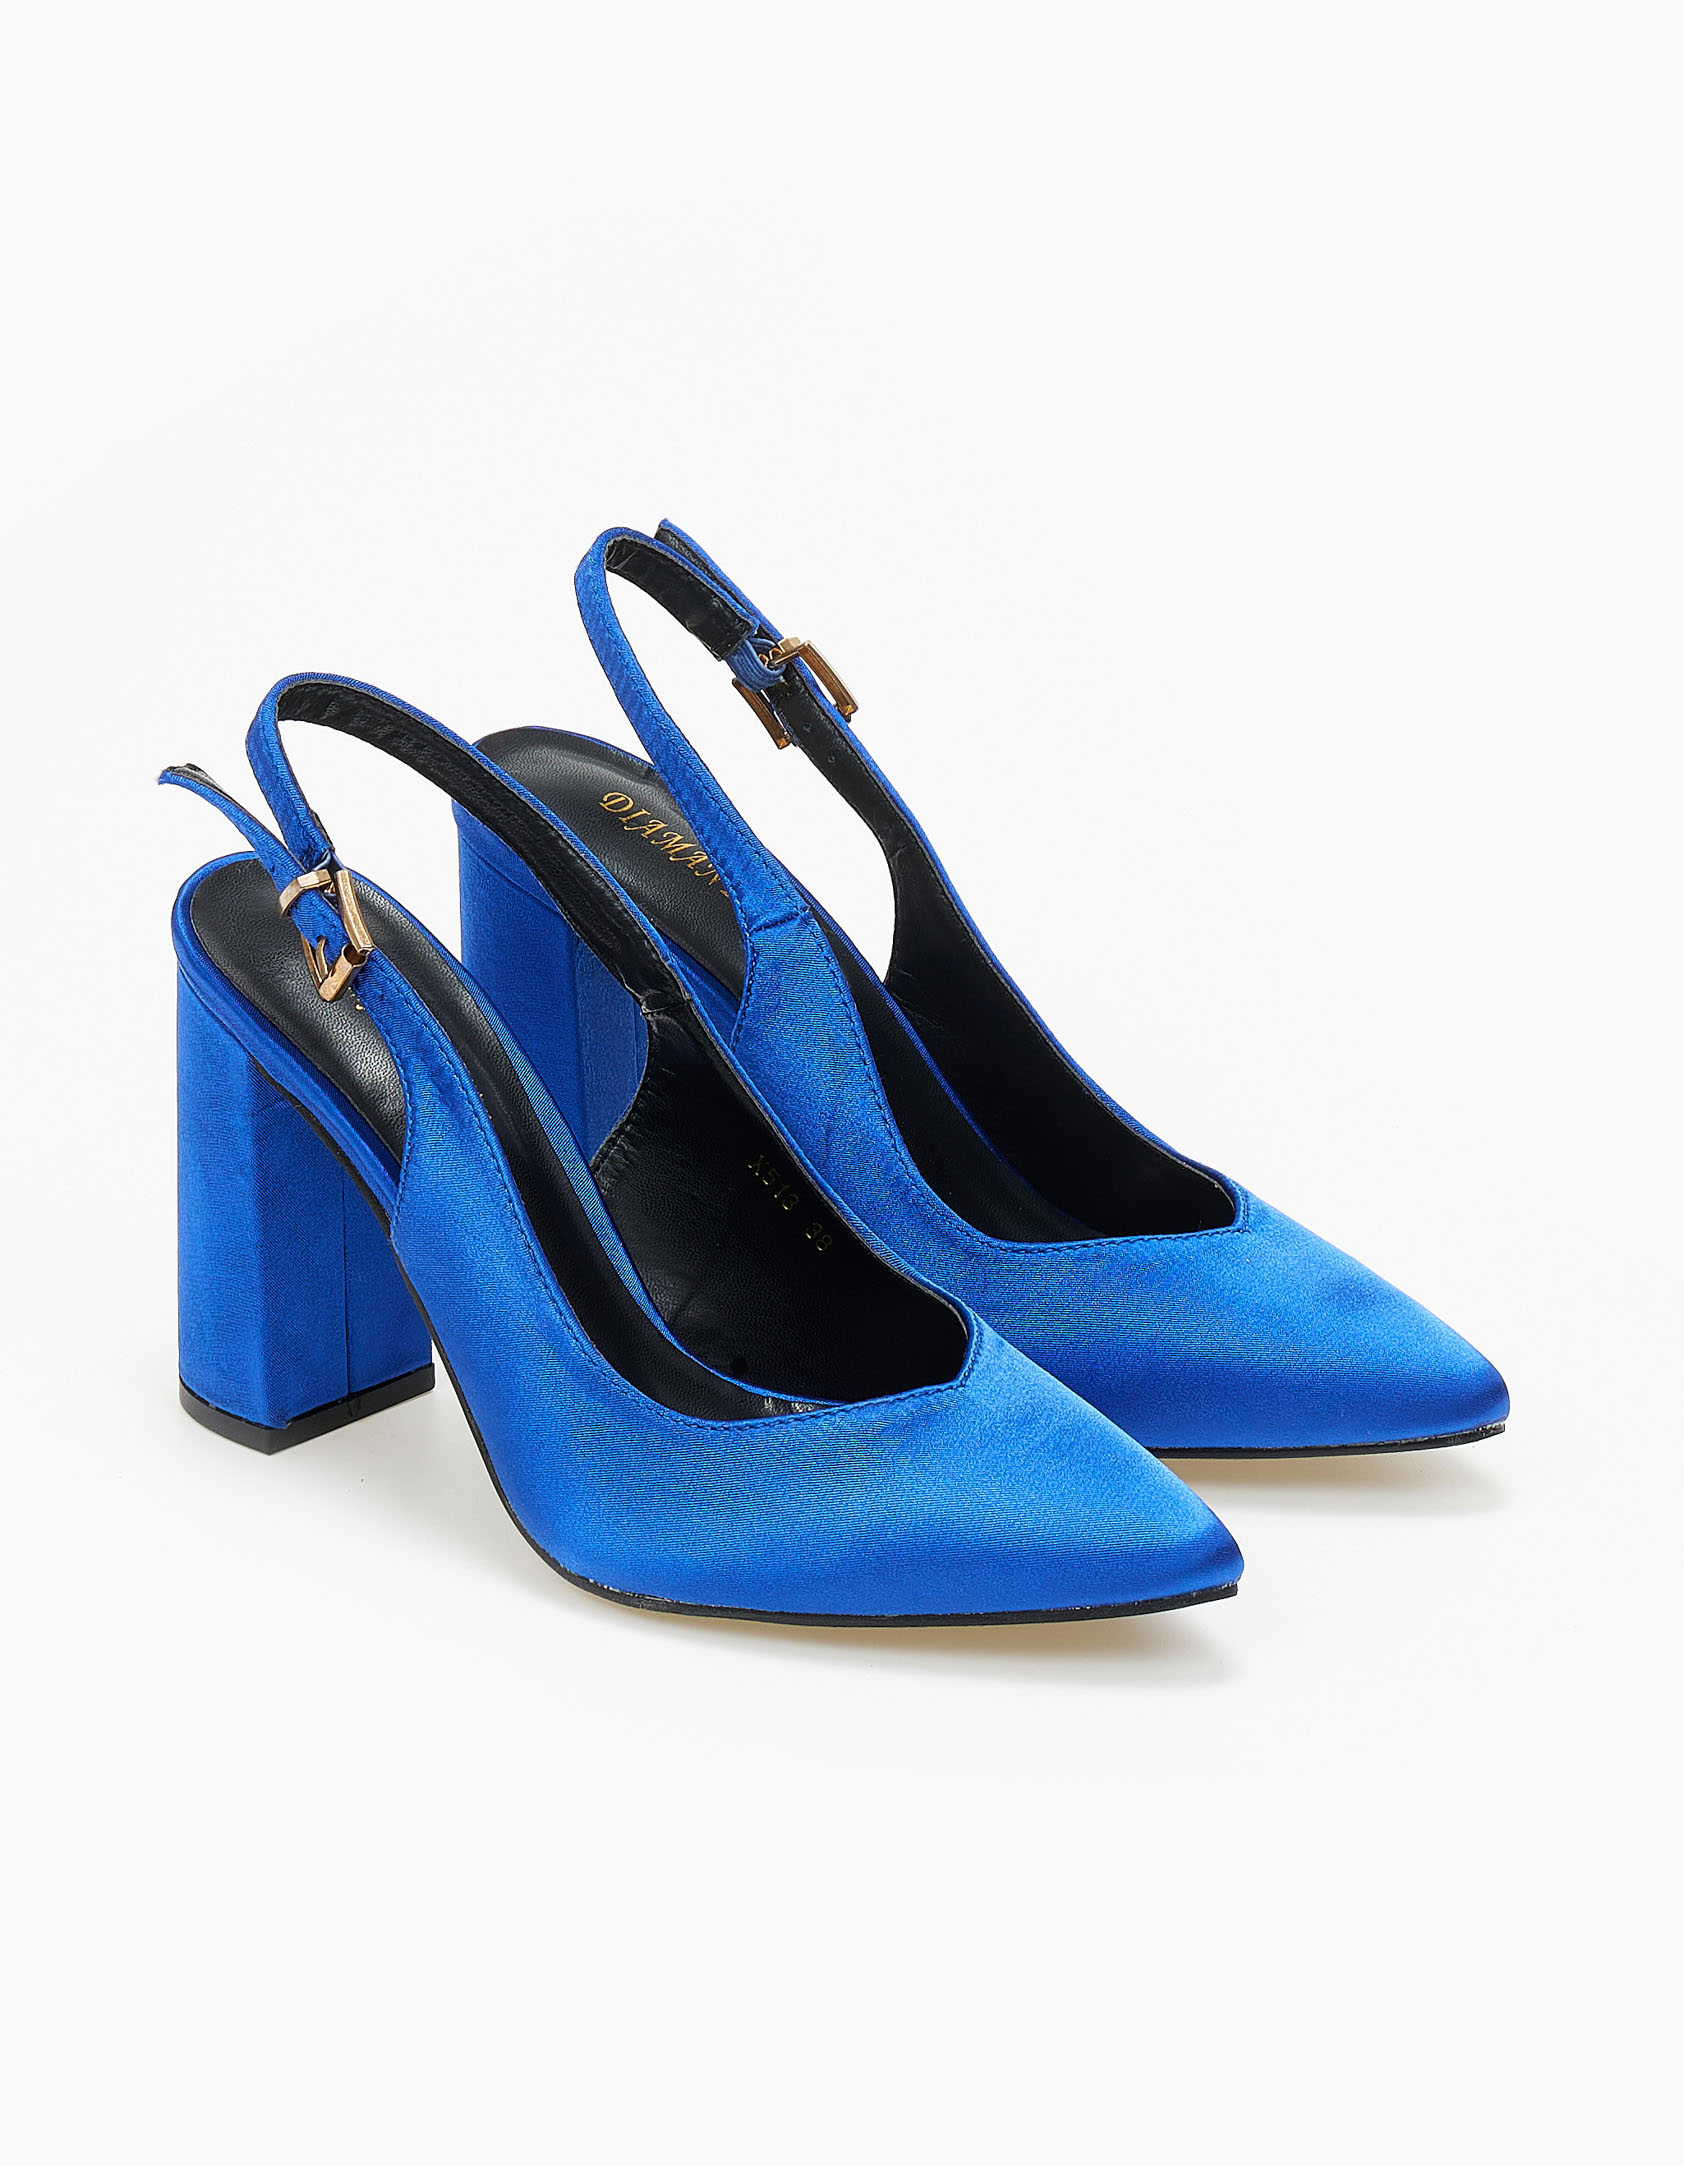 Παπούτσια > Γόβες Γόβες σατέν εξώφτερνες με χοντρό τακούνι - Μπλε Ρουά